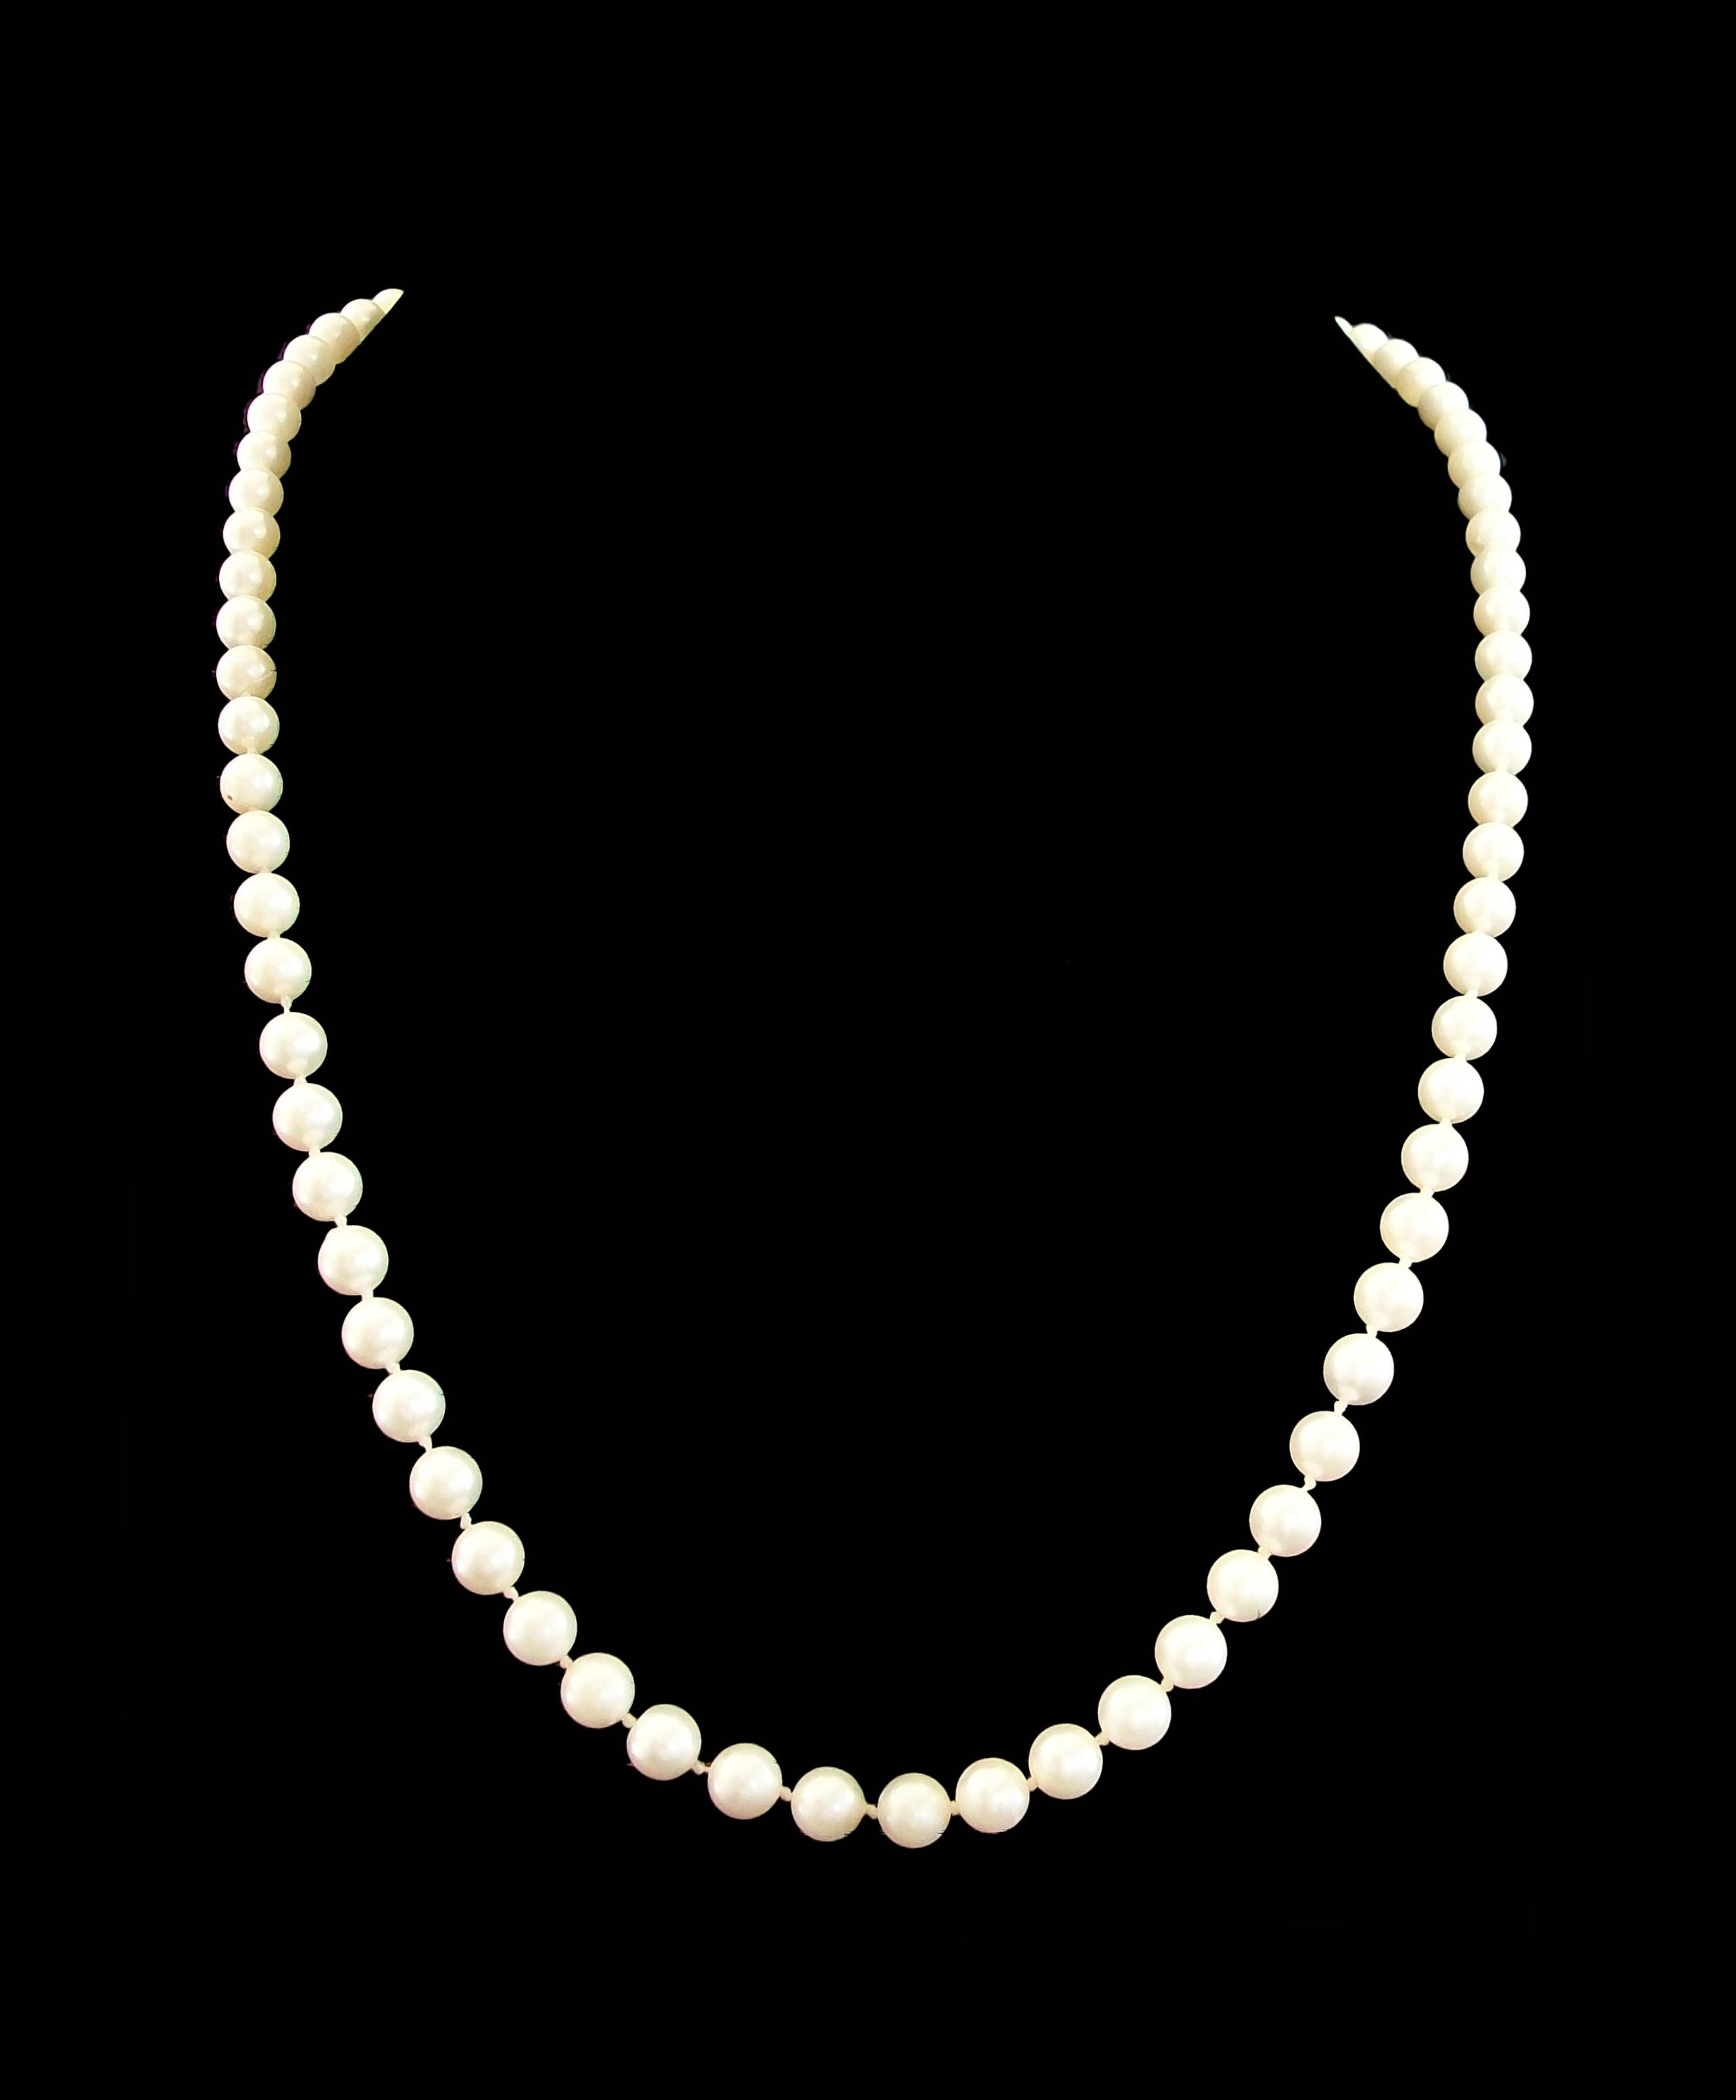 Vintage collier de perles de culture blanches - fermoir en or jaune 14K - 78 perles bien assorties avec des reflets crème - 6,5 à 7,0 mm de diamètre chacune - assemblage noué à la main - signé 'LGC' sur le fermoir (fabricant inconnu/non identifié) -